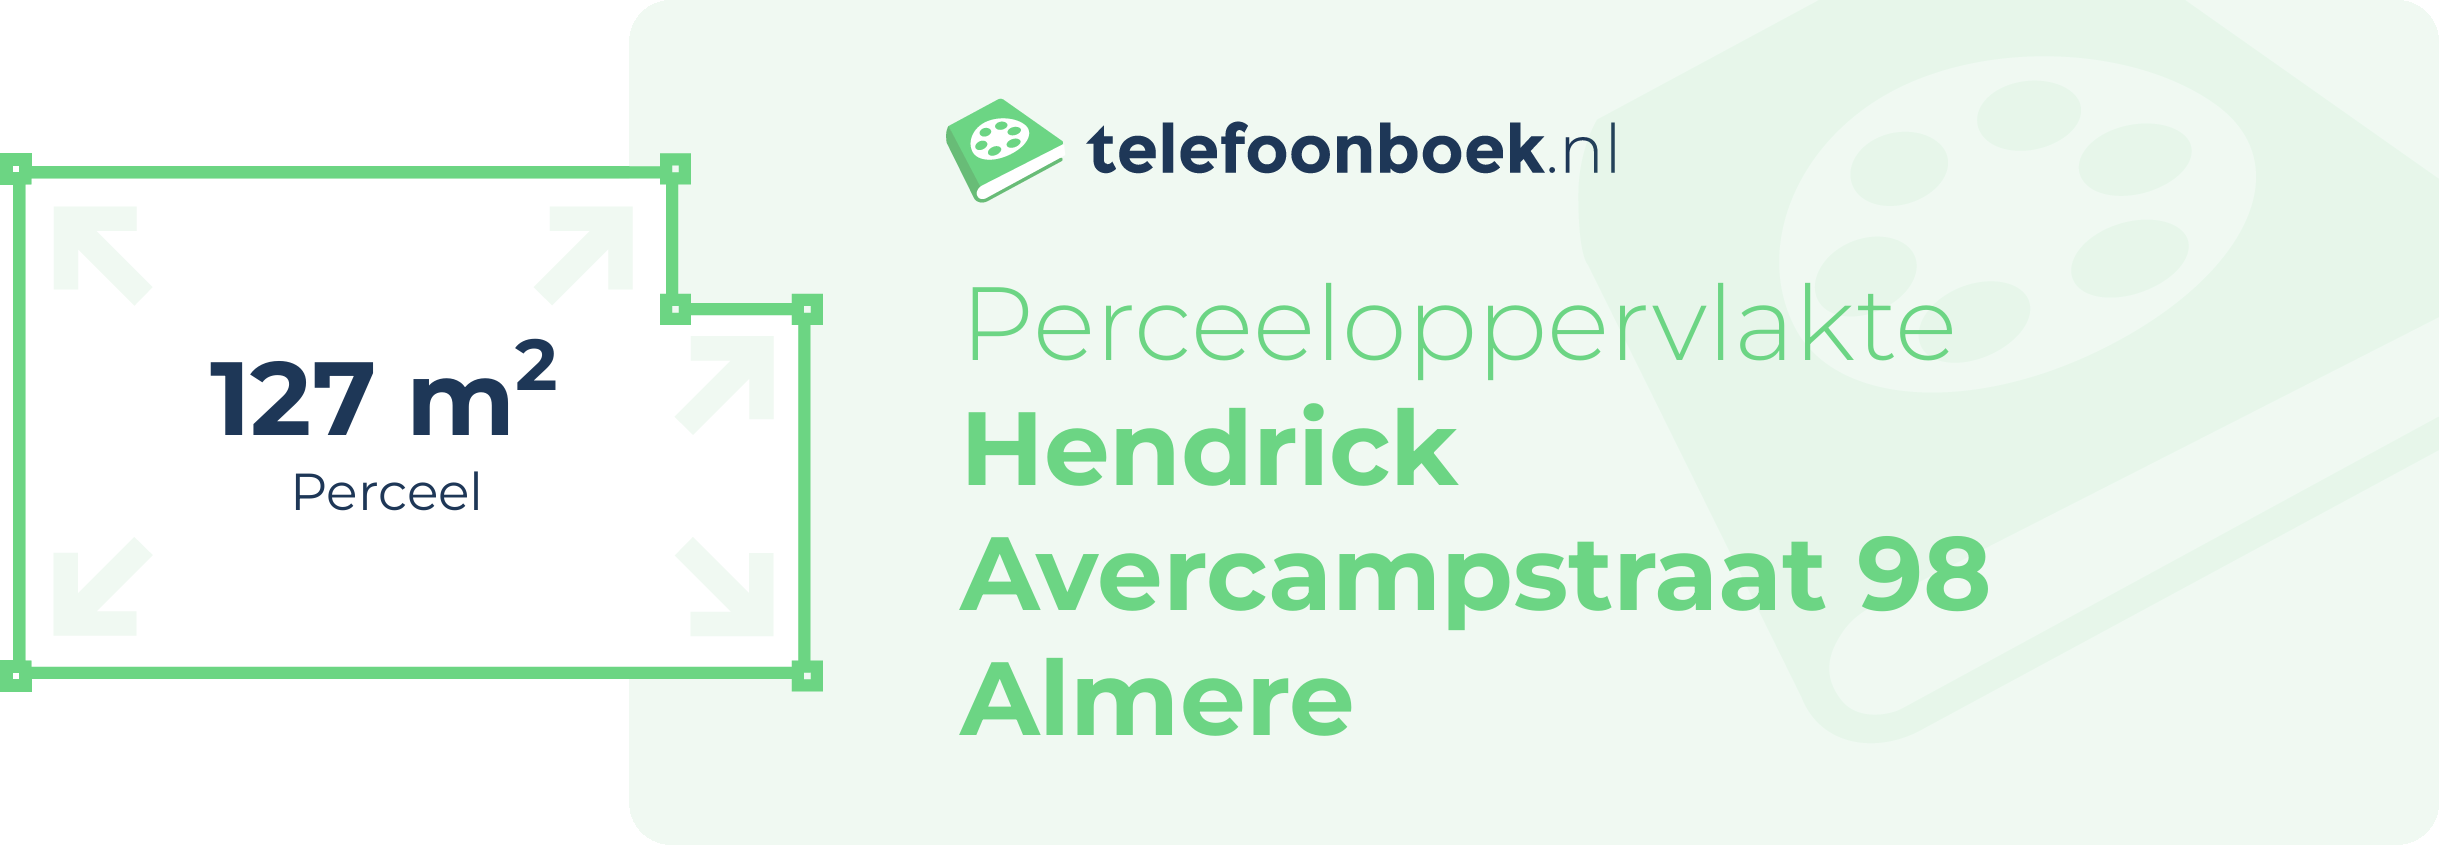 Perceeloppervlakte Hendrick Avercampstraat 98 Almere